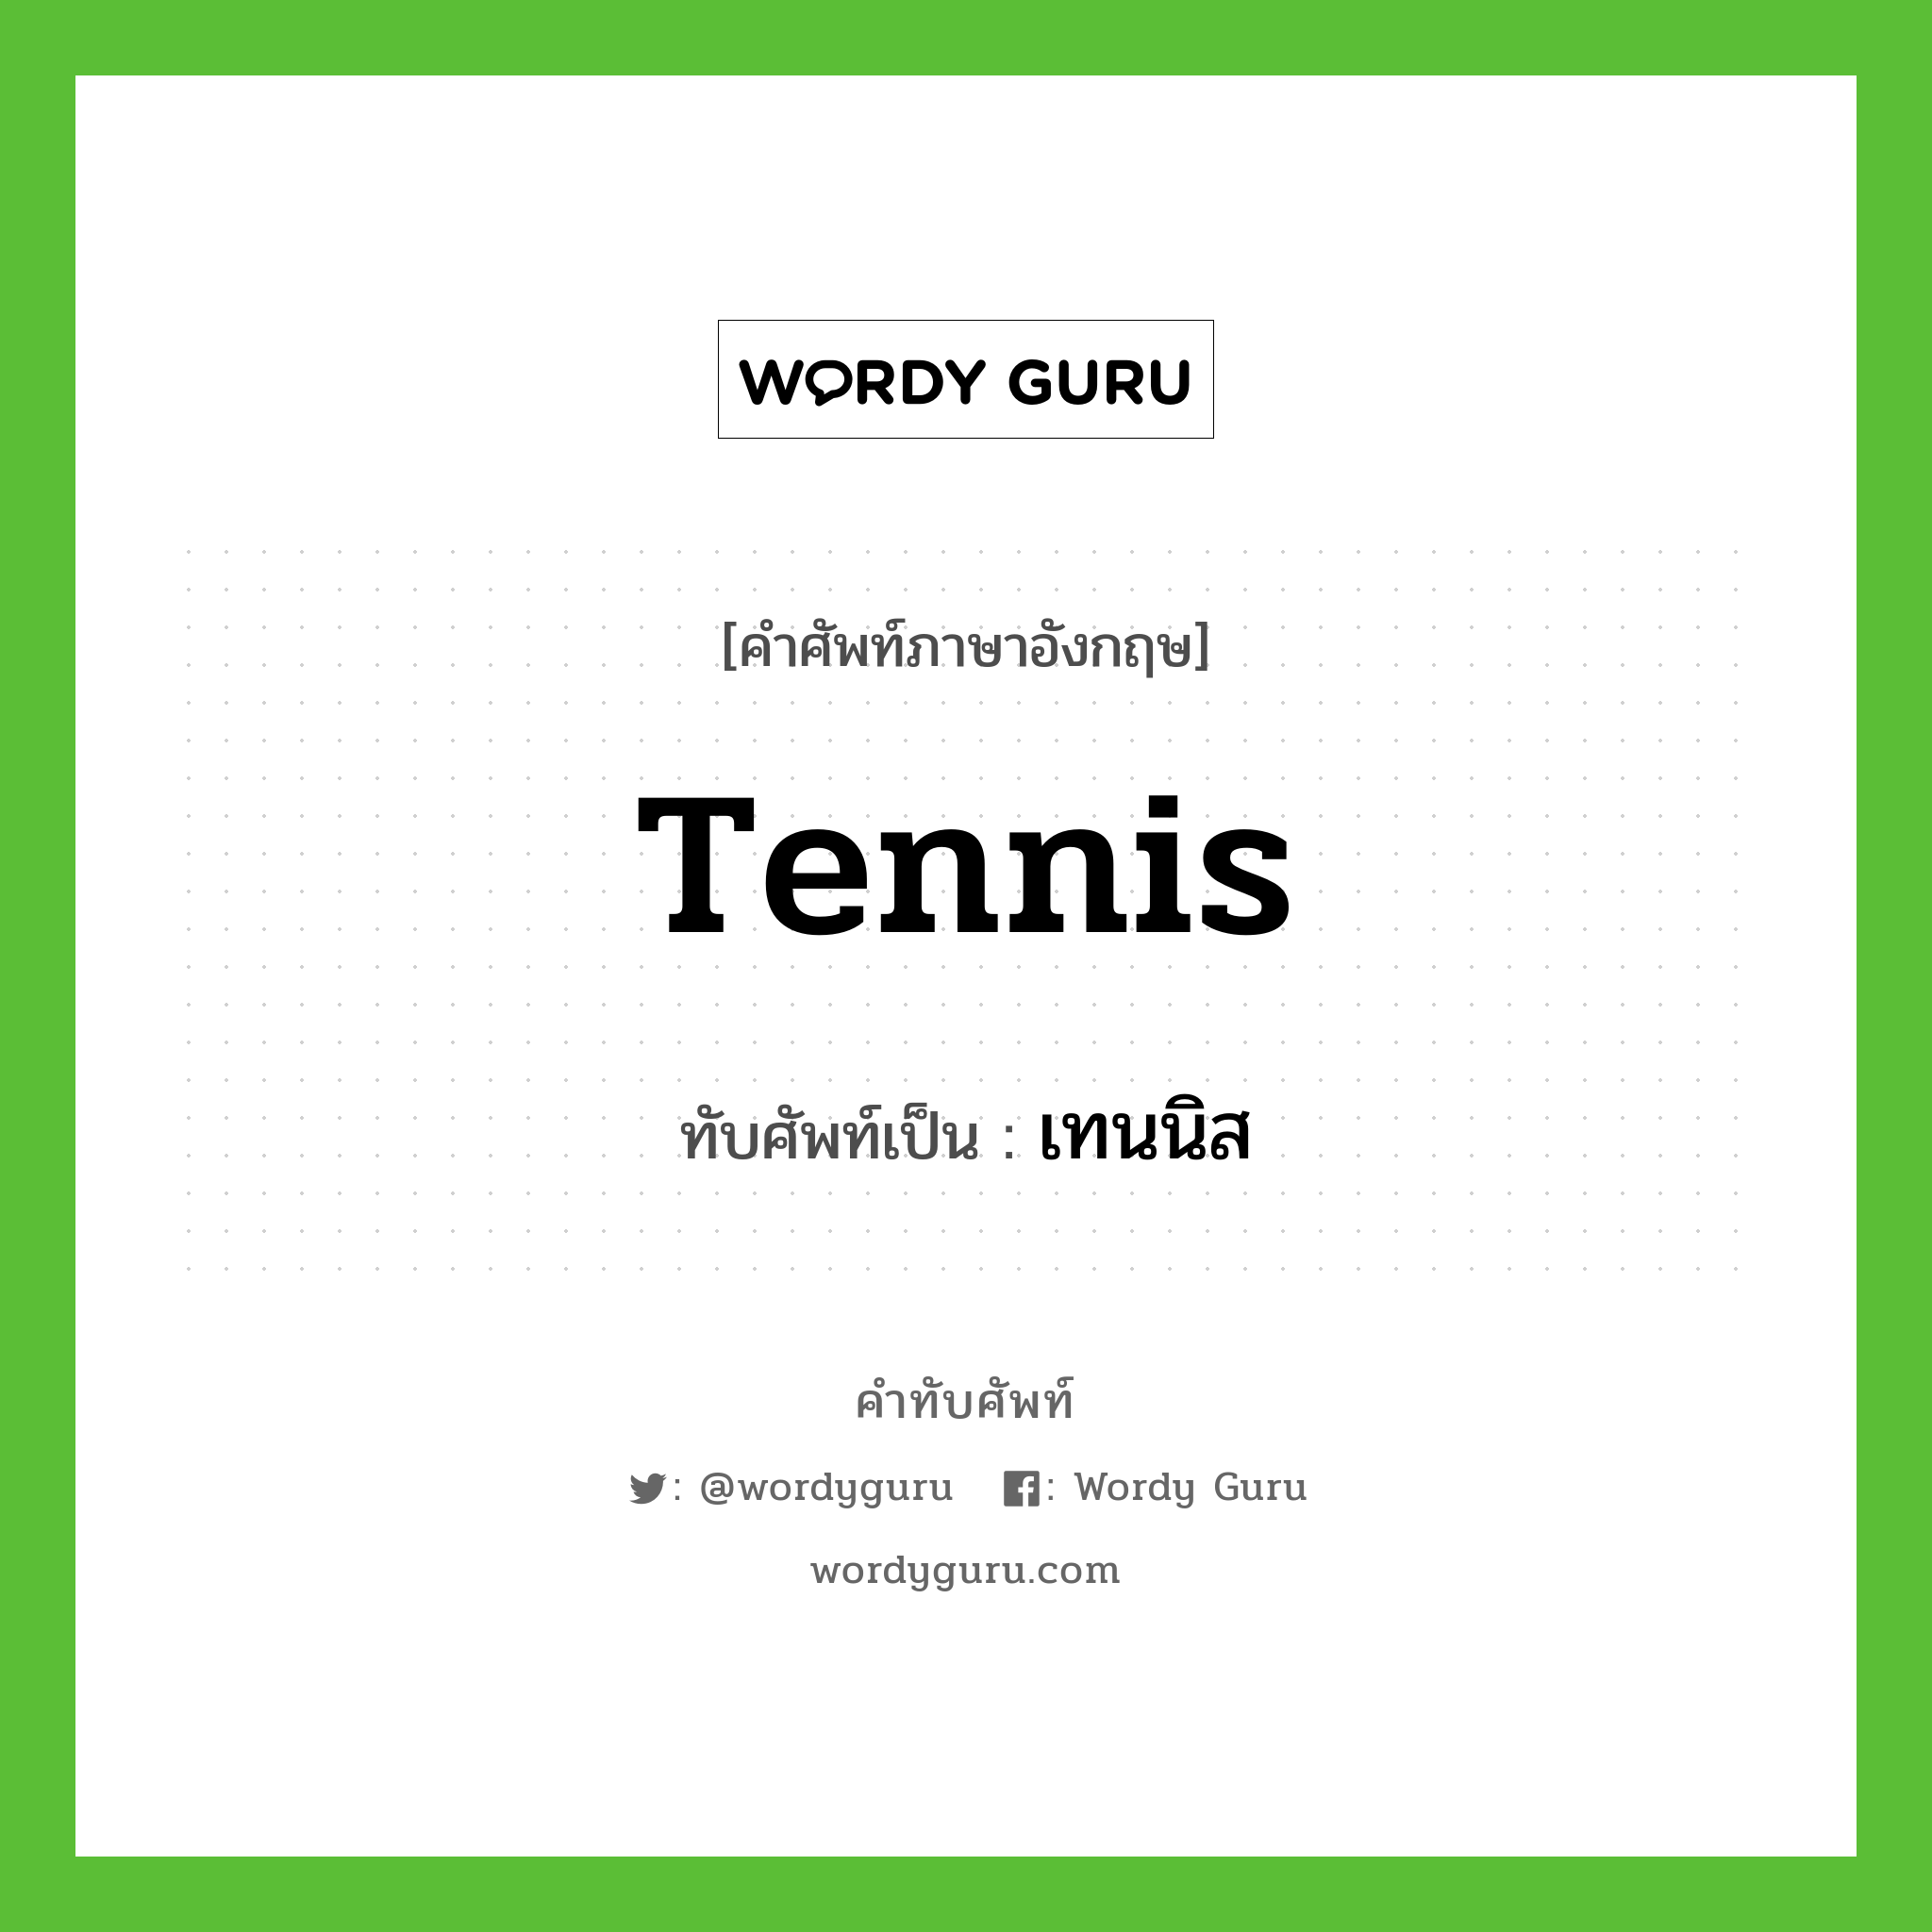 tennis เขียนเป็นคำไทยว่าอะไร?, คำศัพท์ภาษาอังกฤษ tennis ทับศัพท์เป็น เทนนิส